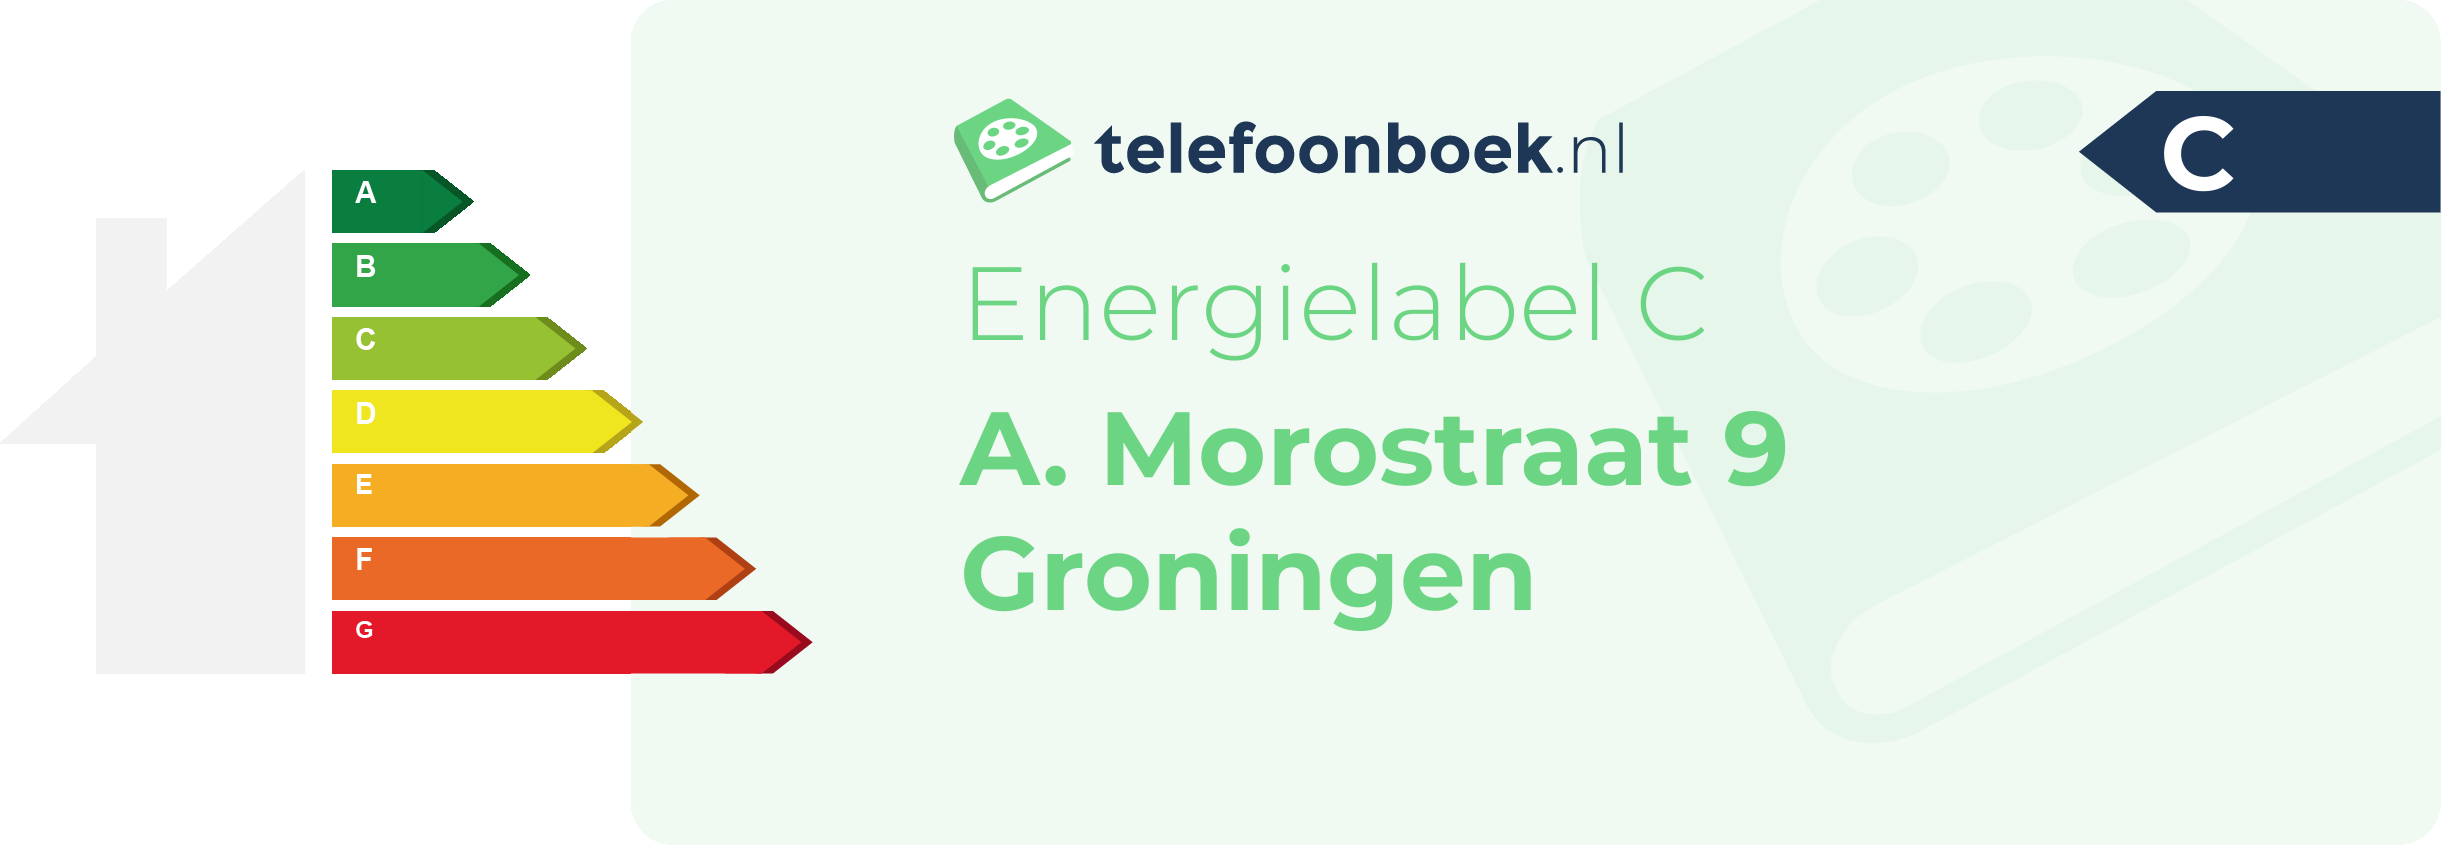 Energielabel A. Morostraat 9 Groningen